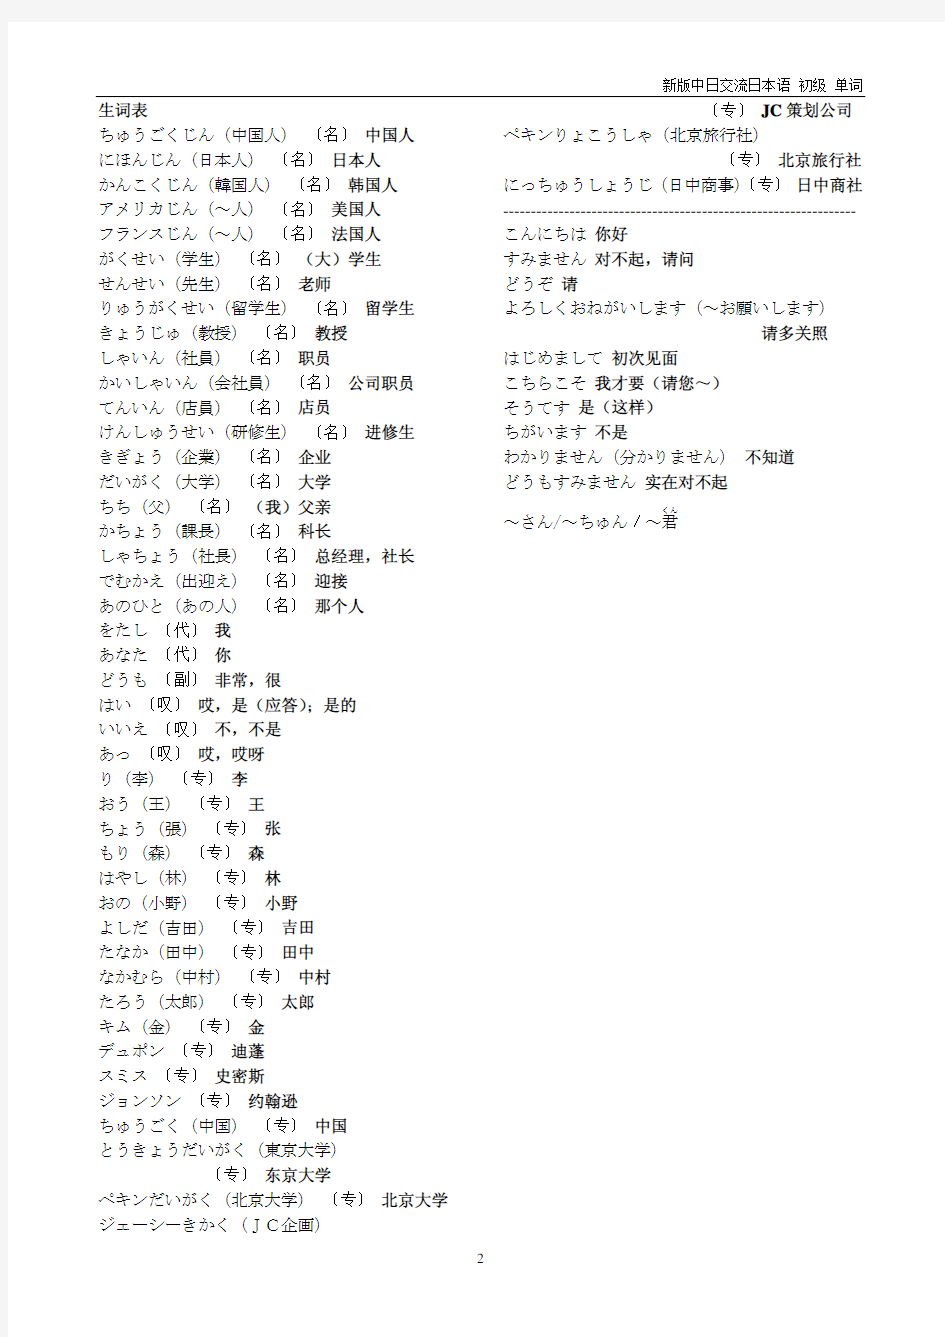 新版中日交流标准日本语 初级上册 课文 译文 单词